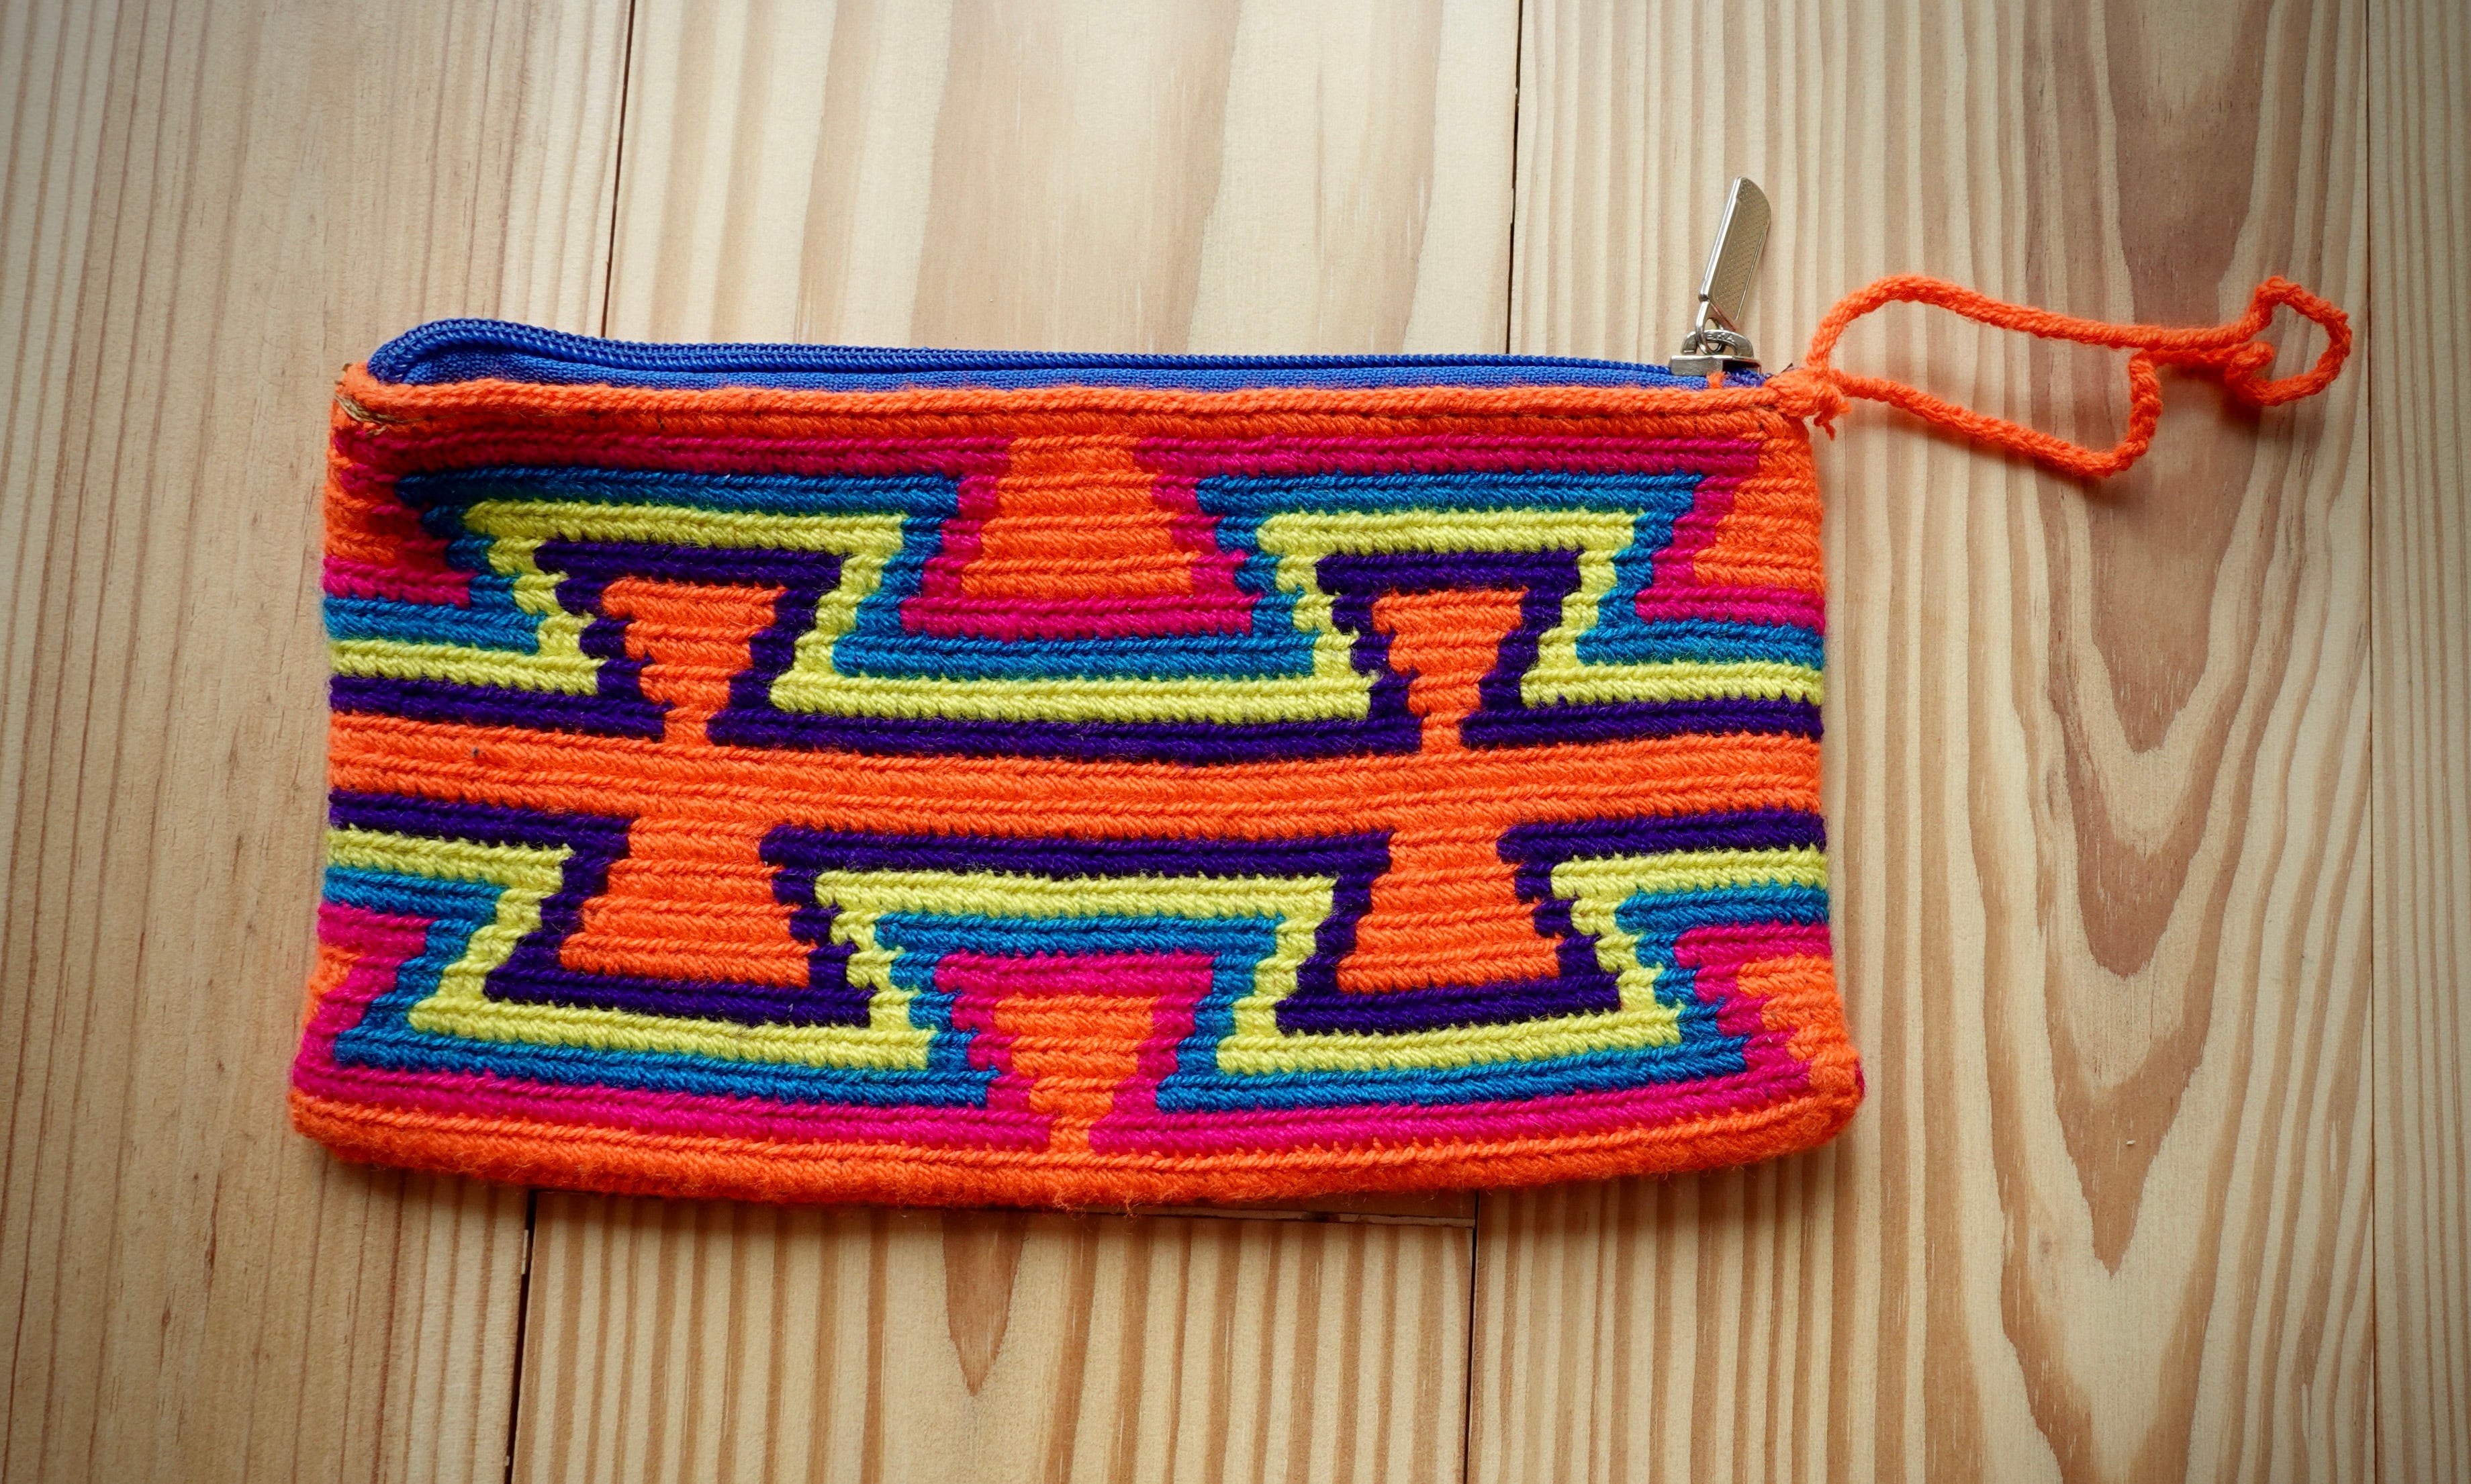 Aamaizniziqui Wayuu Handmade Wristlet Clutch, Medium